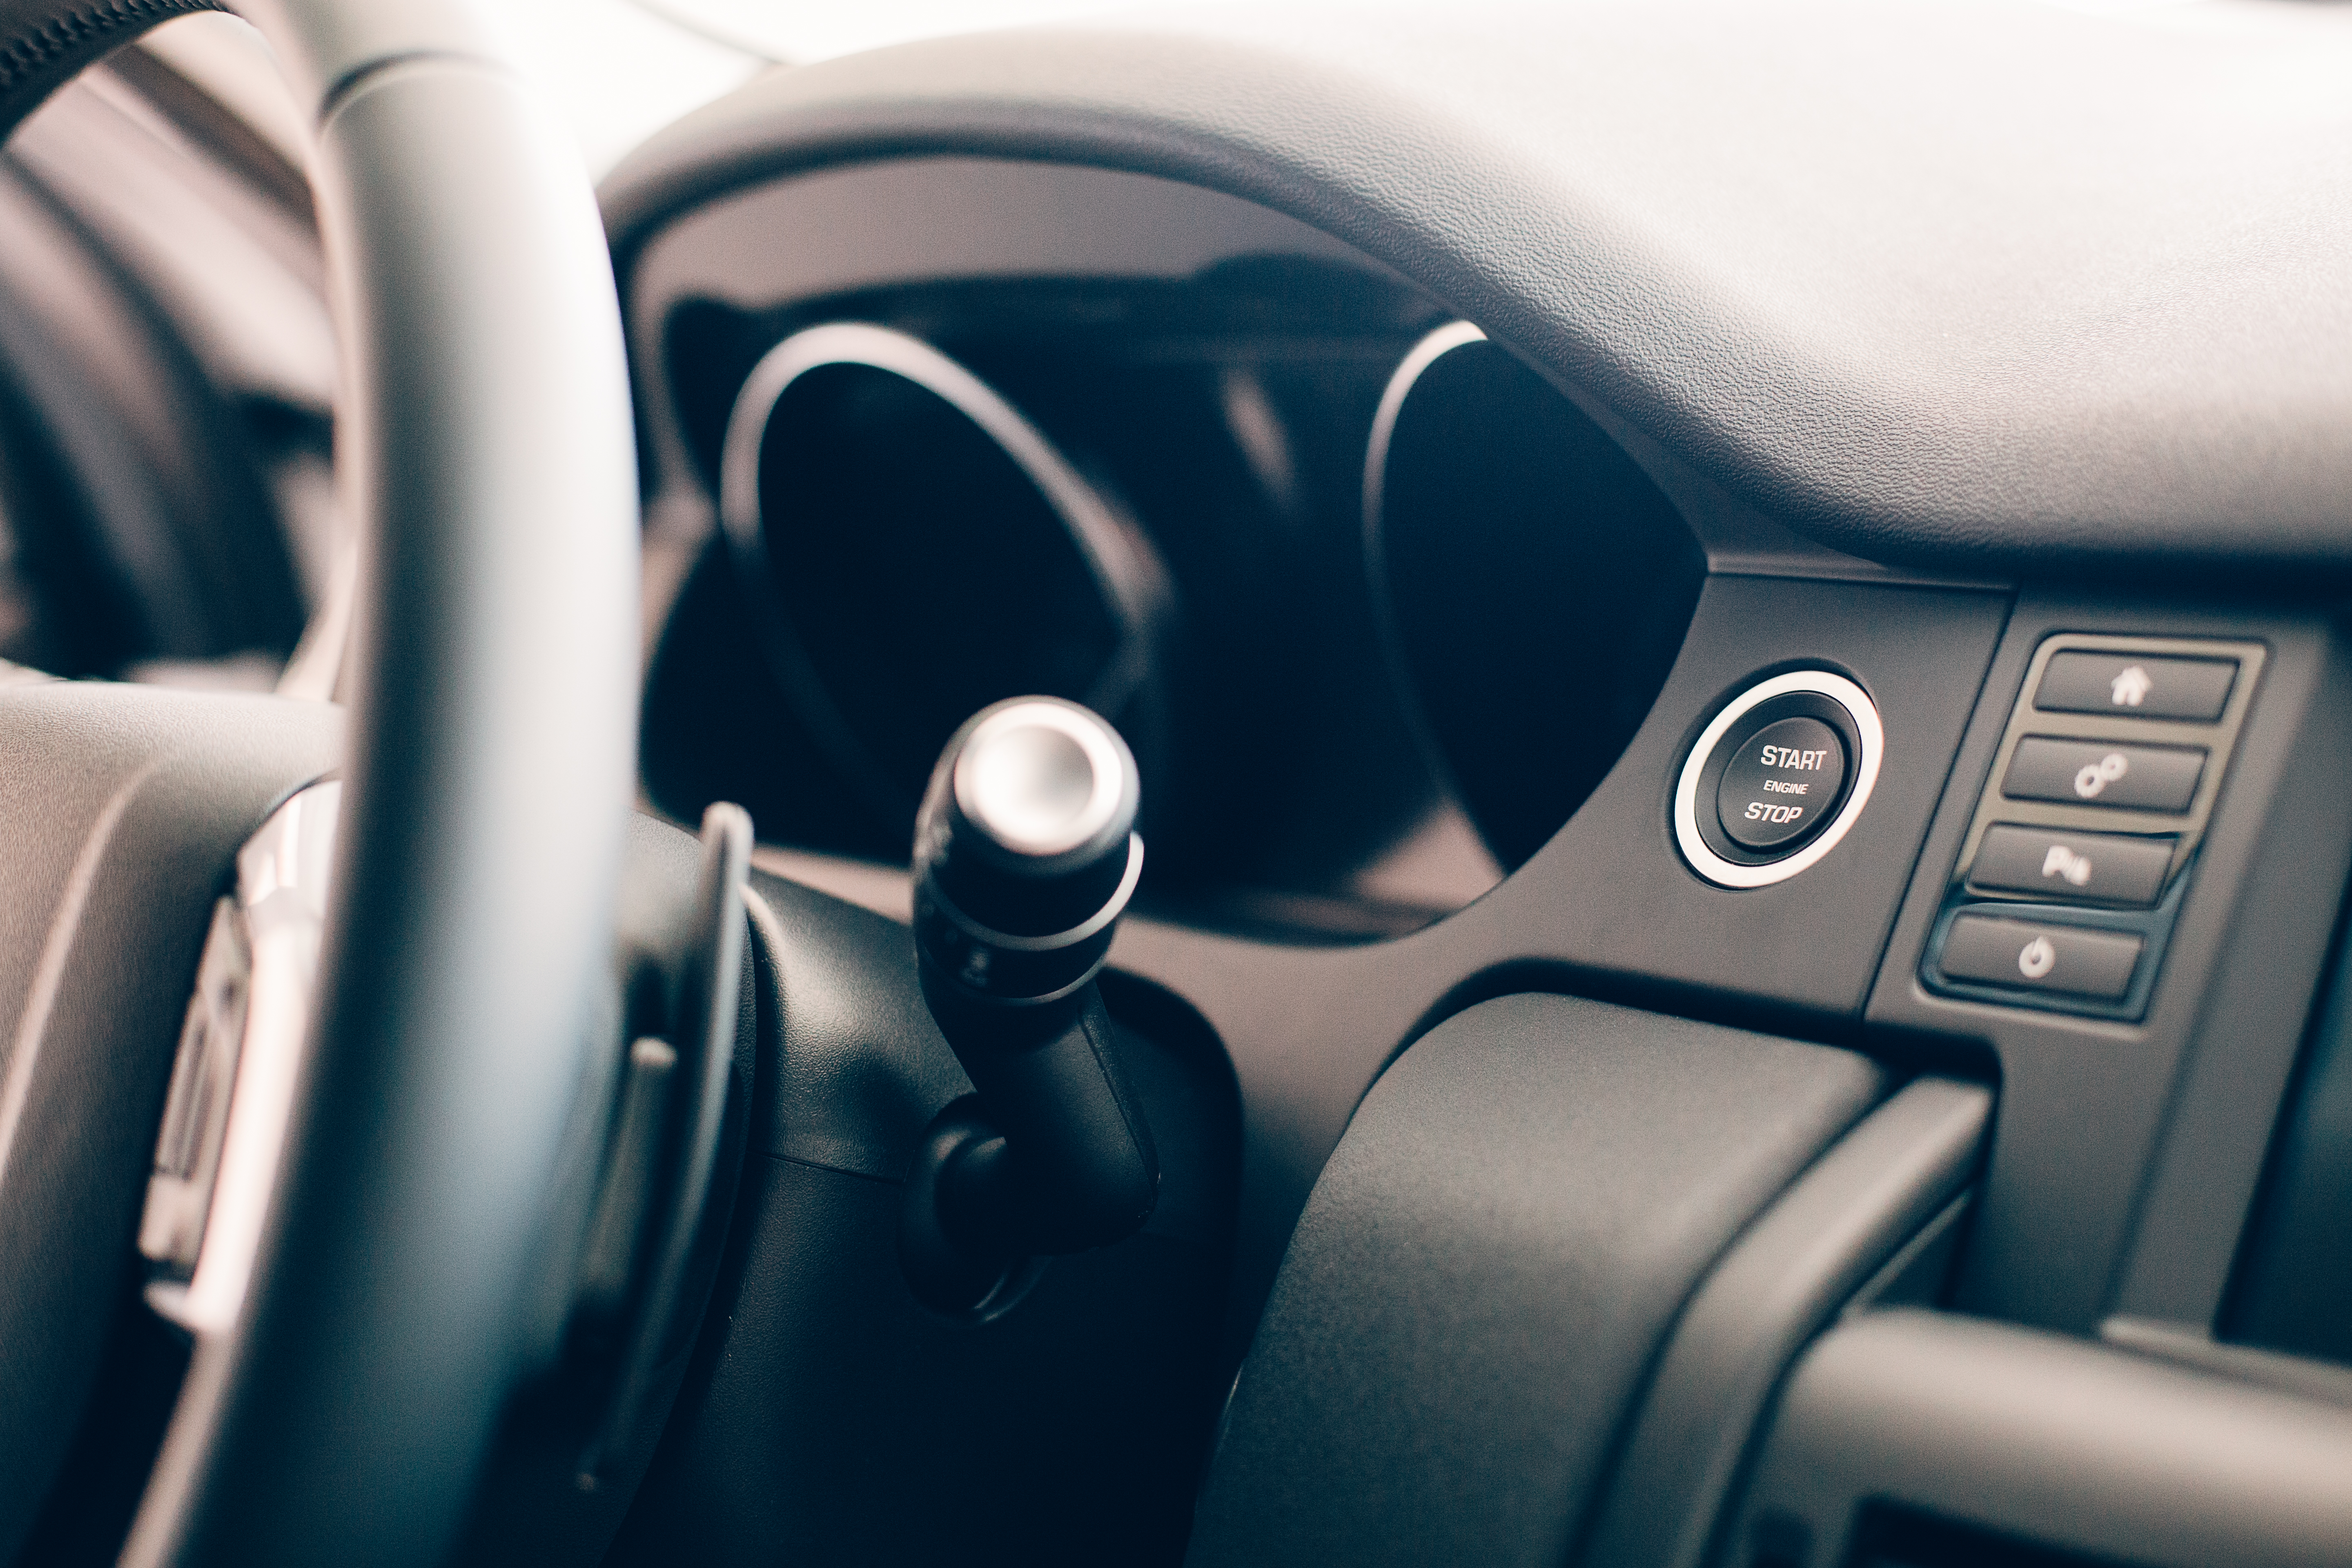 car-steering-wheel-details-2021-08-26-17-00-30-utc.jpg